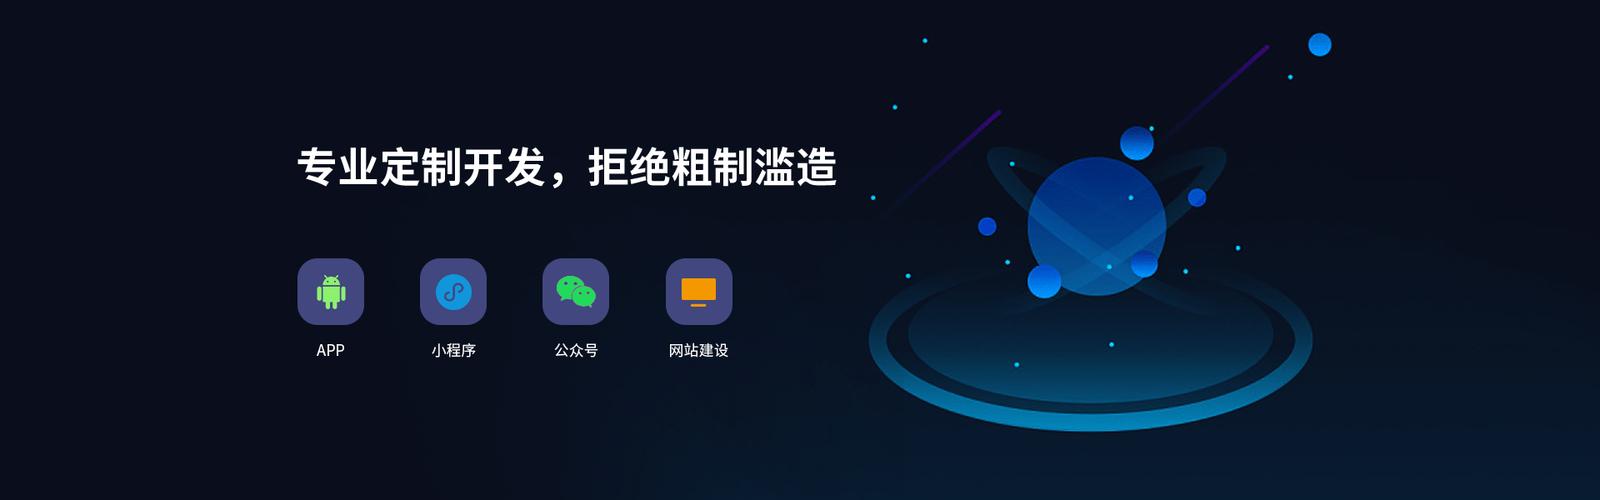 广州app开发公司 - 广州红匣子8年专注app与小程序开发